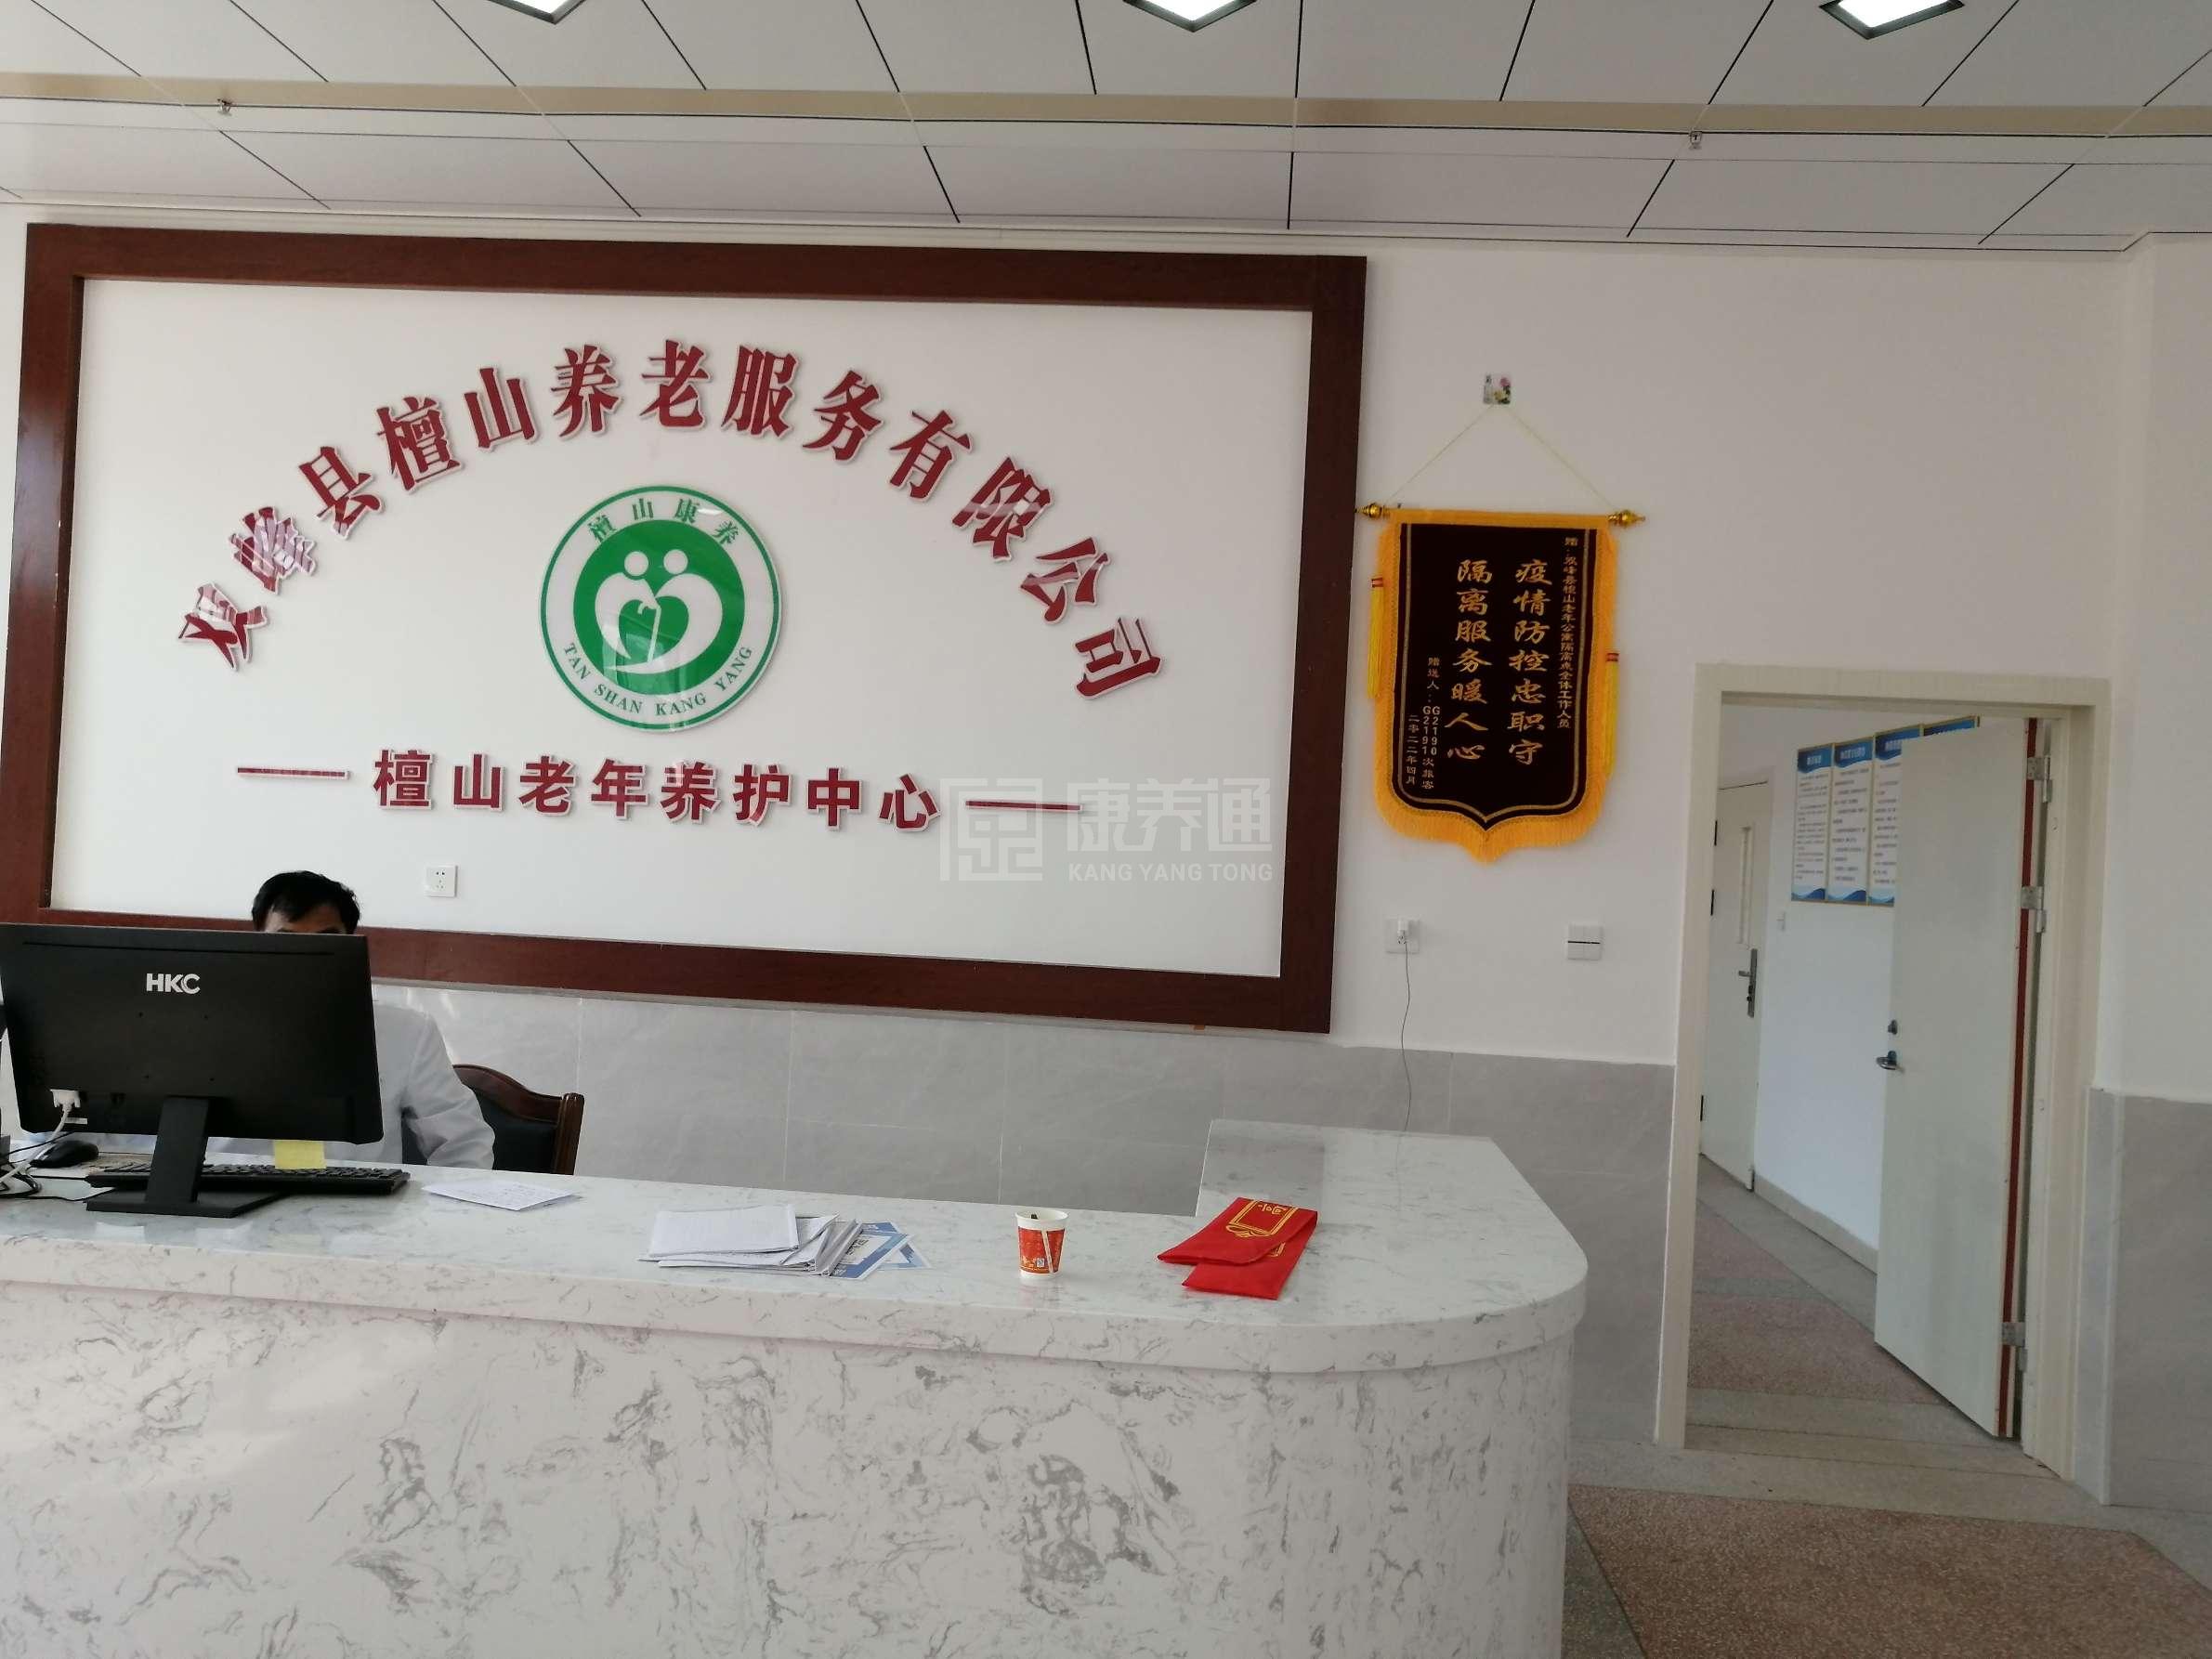 双峰县舒馨檀山老年养护中心服务项目图1健康安全、营养均衡、味美可口